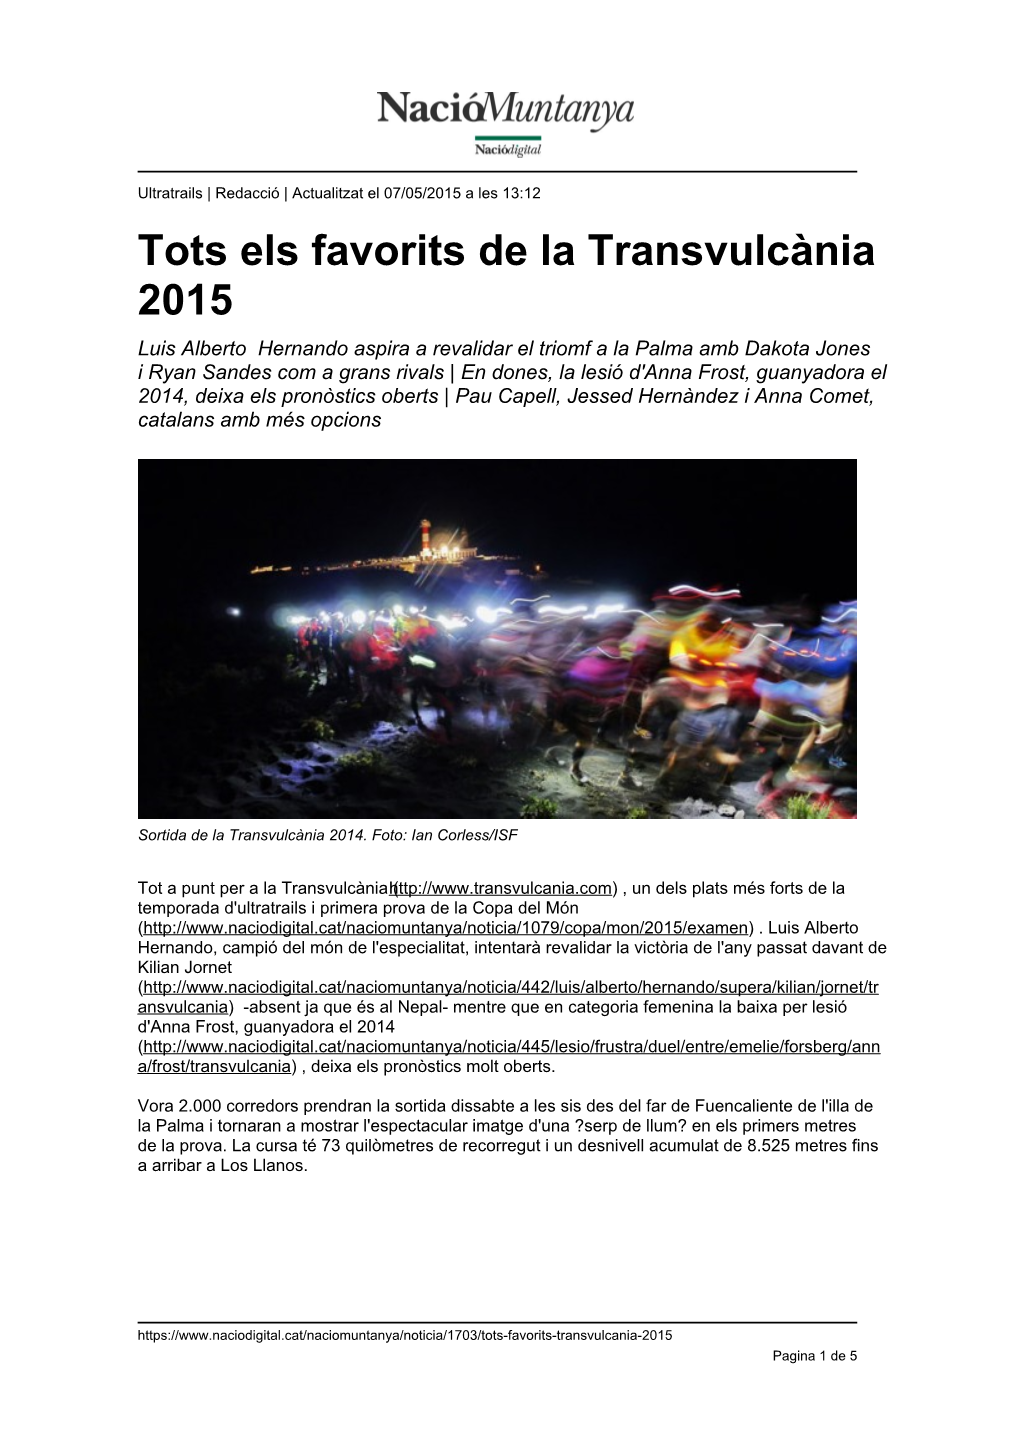 Tots Els Favorits De La Transvulcània 2015